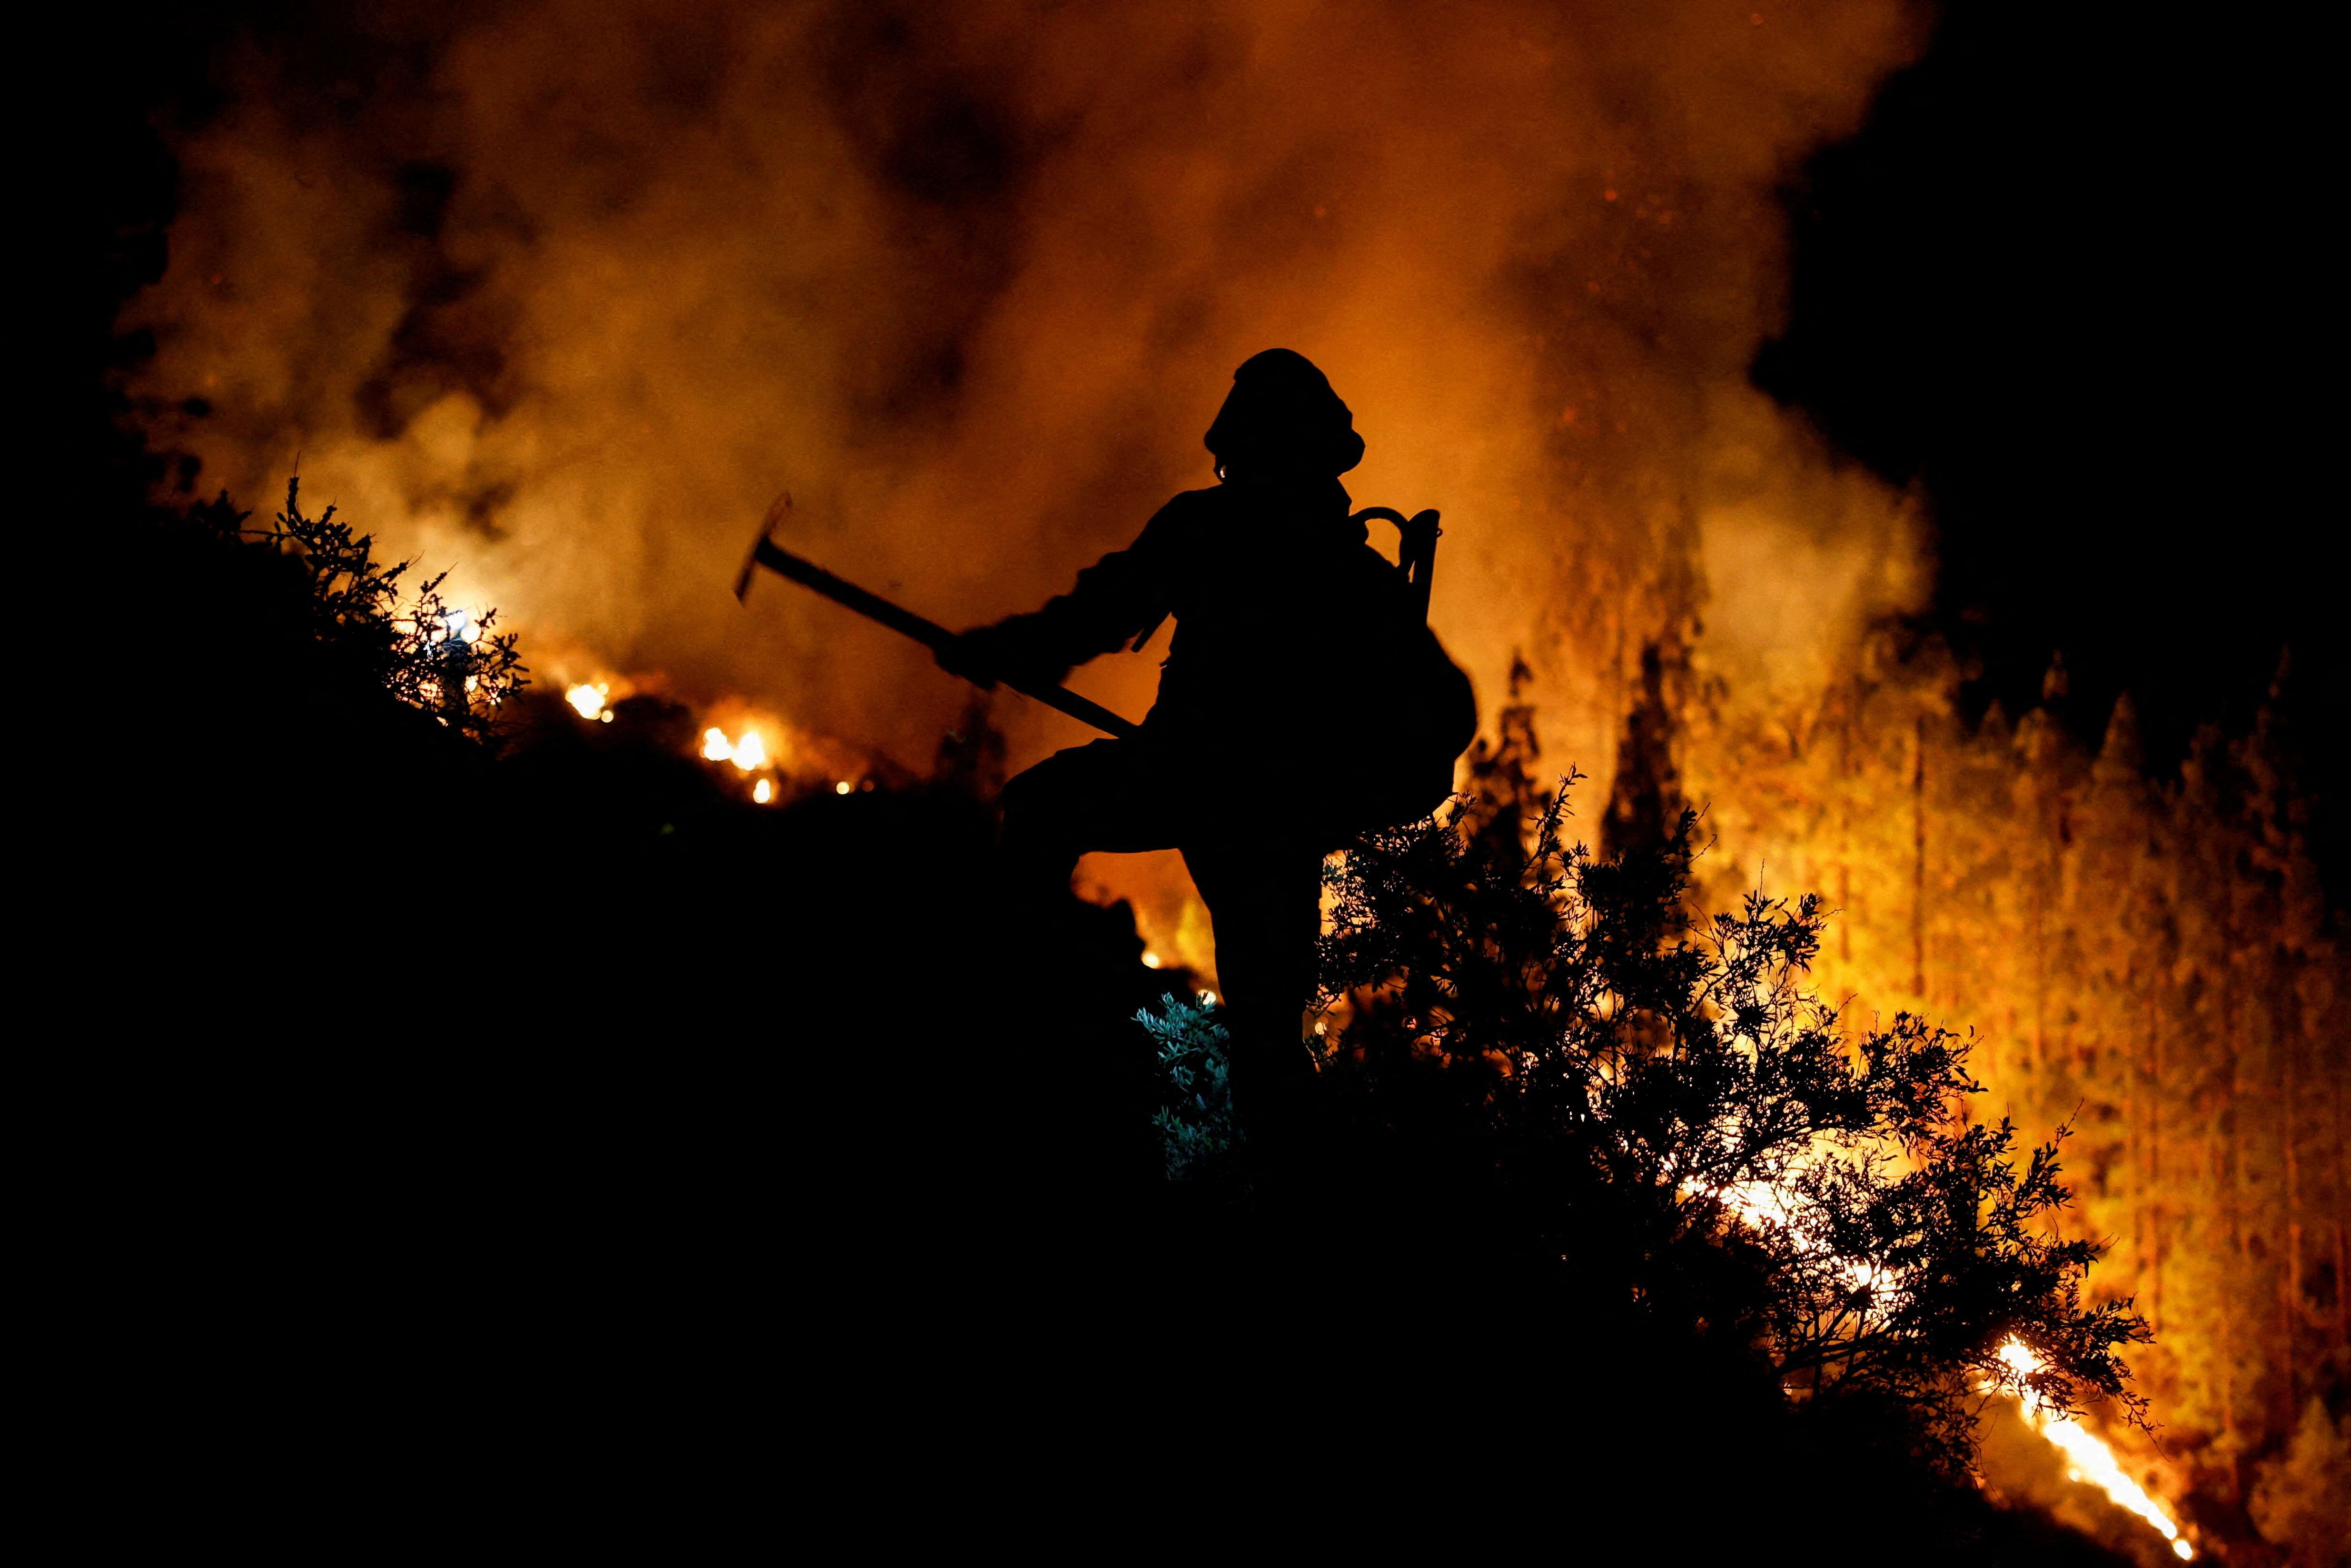 Un bombero trabajaba durante la extinción del incendio forestal en Arafo, el miércoles.